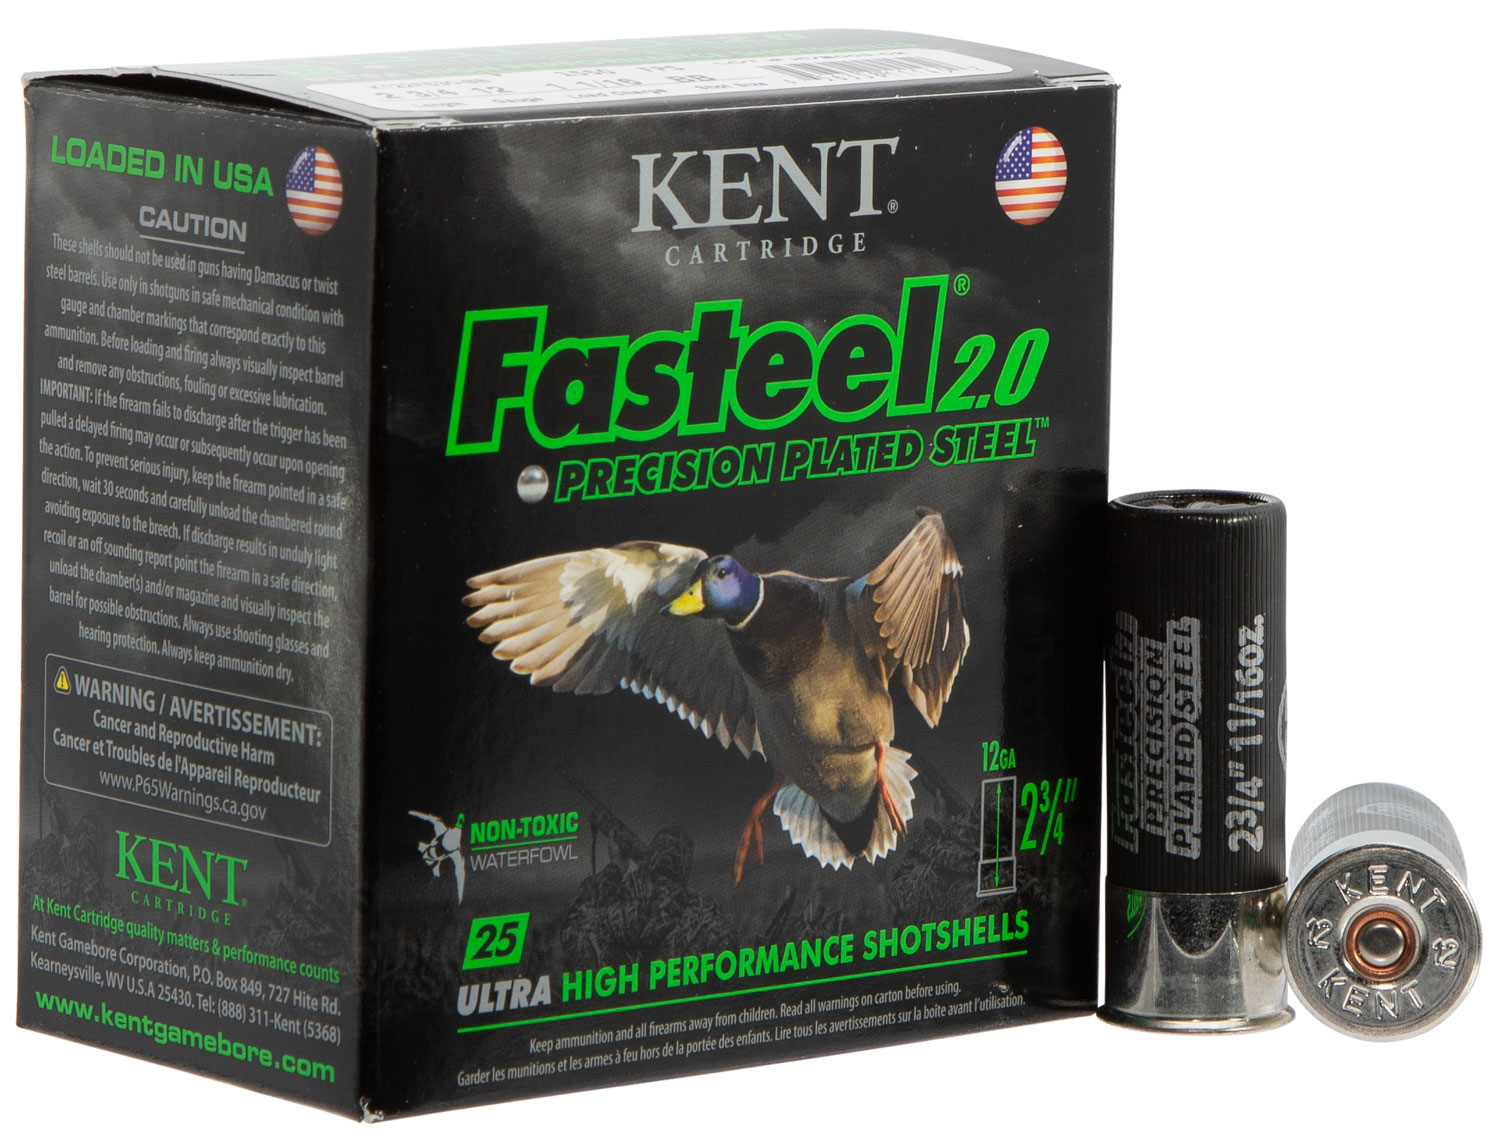 Kent Cartridge K122FS30BB Fasteel 2.0  12 Gauge, 2.75